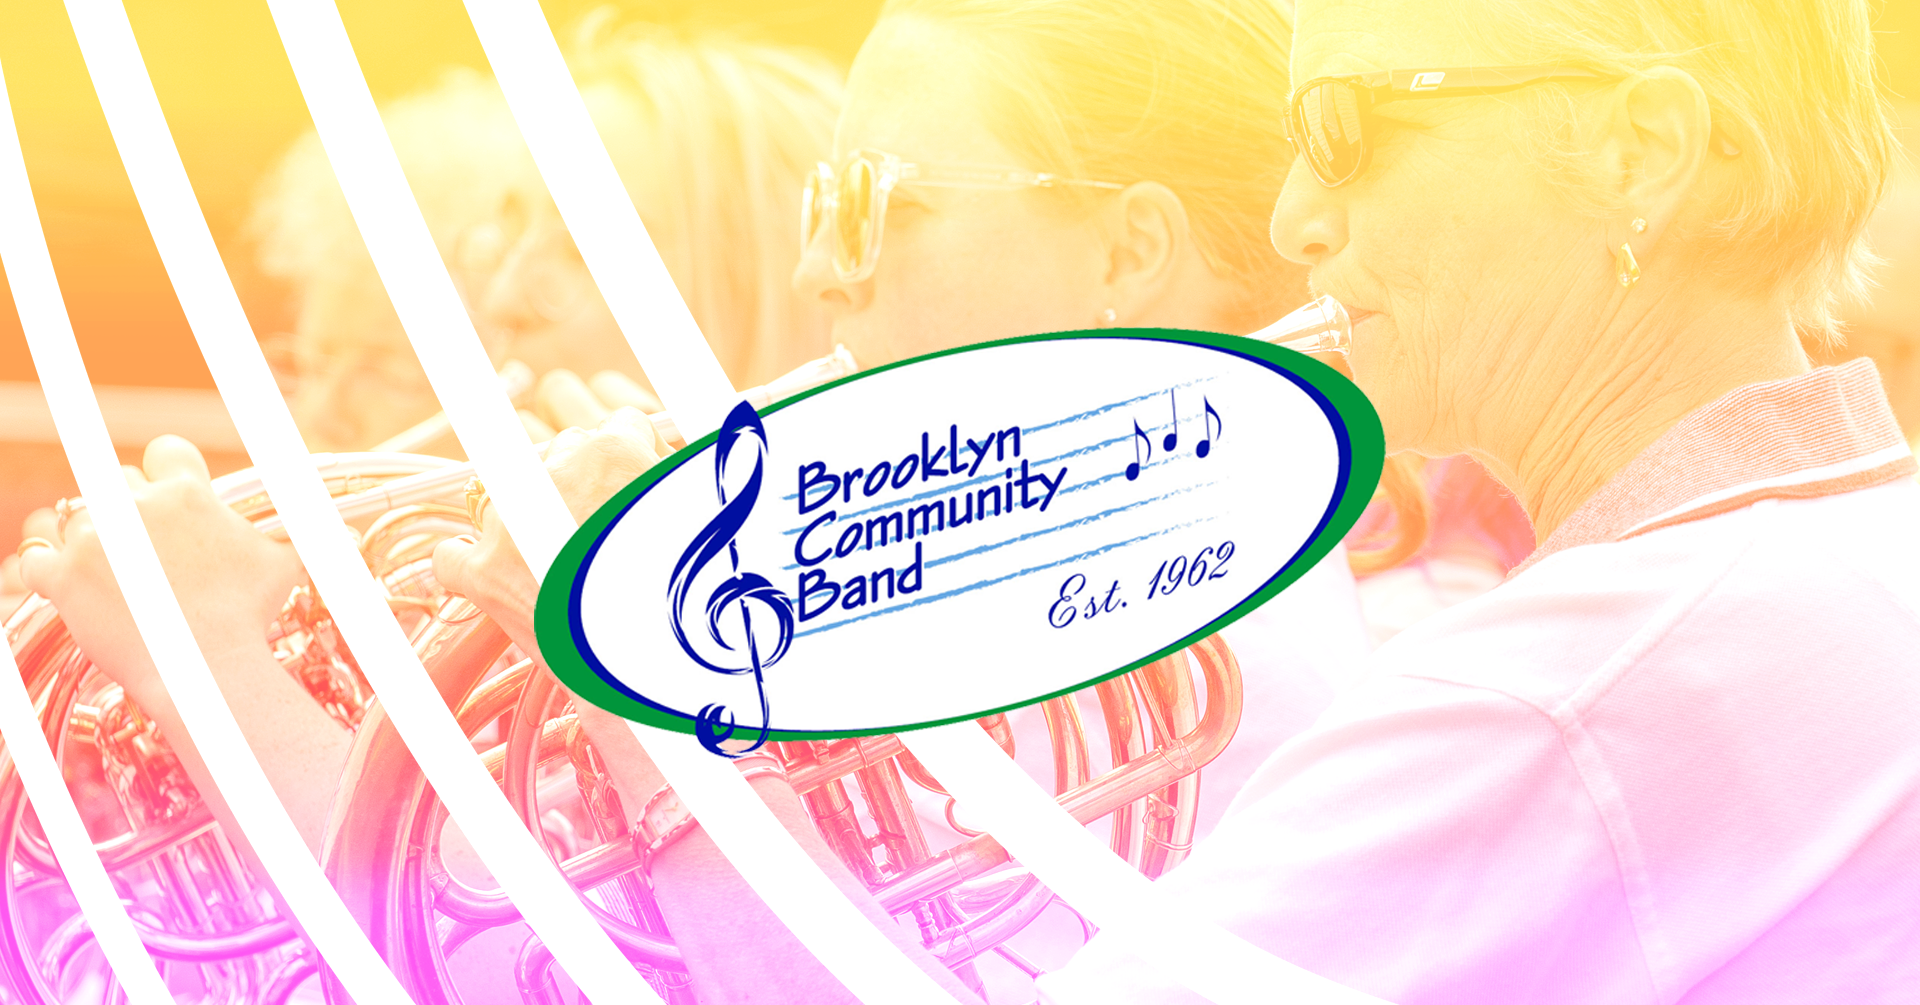 logo of Brooklyn community band 